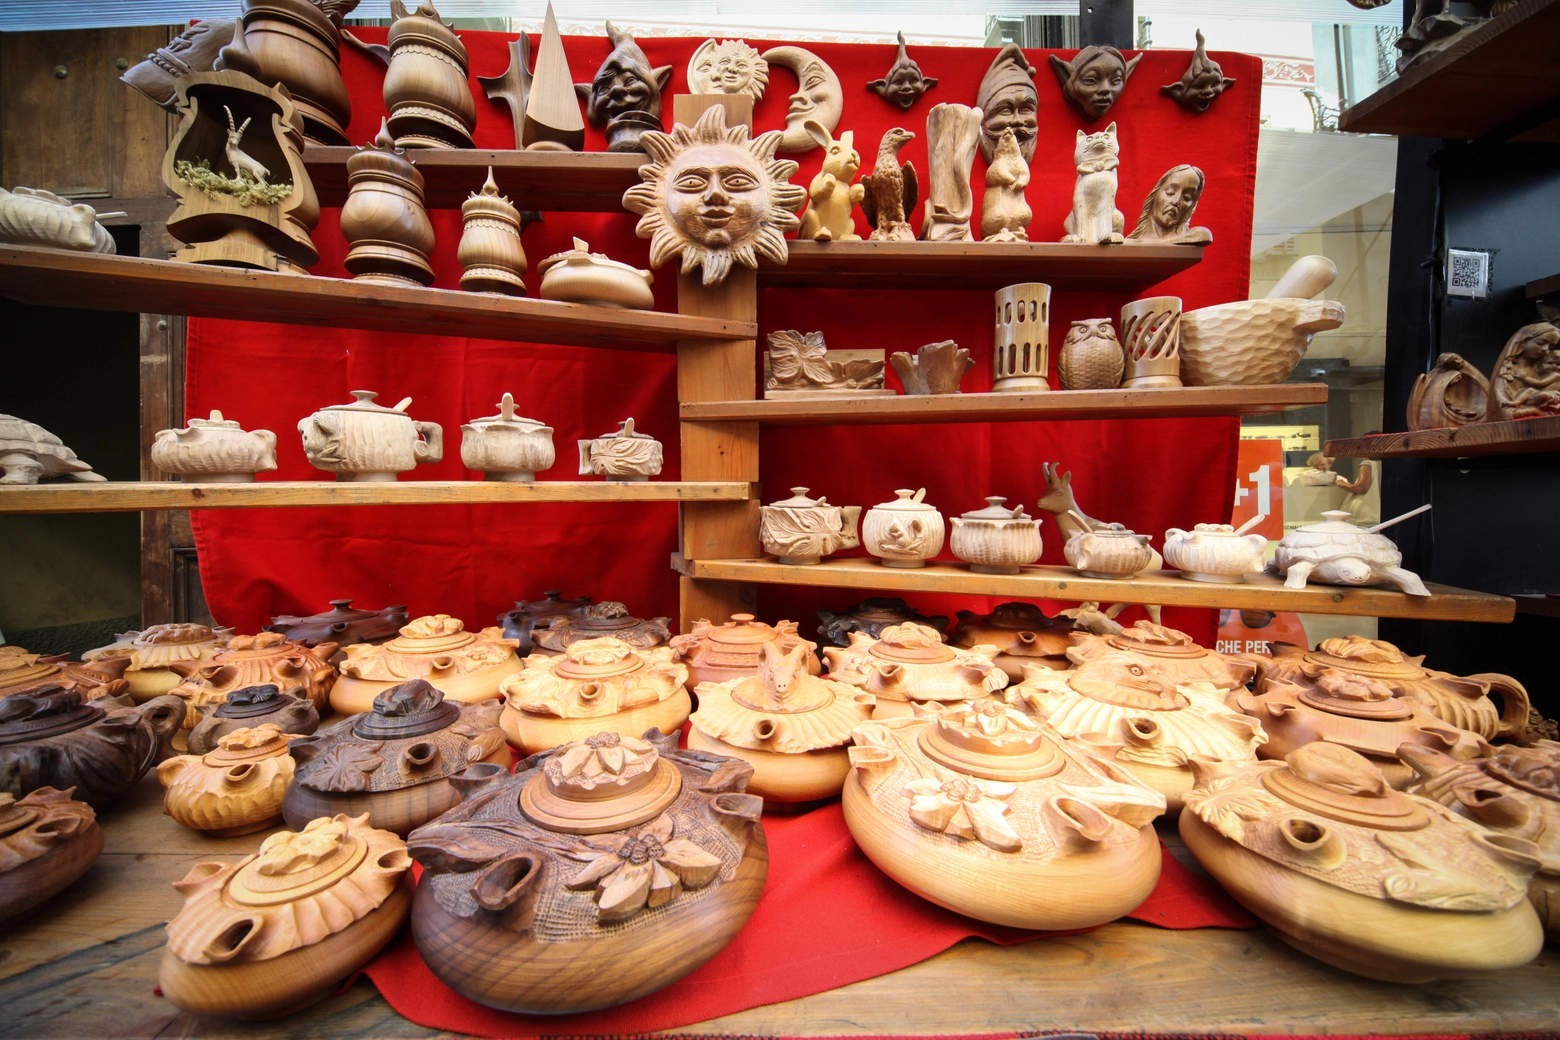 La mostra mercato dell'artigianato valdostano Foire d’été in Valle d'Aosta dal 20 luglio al 4 agosto